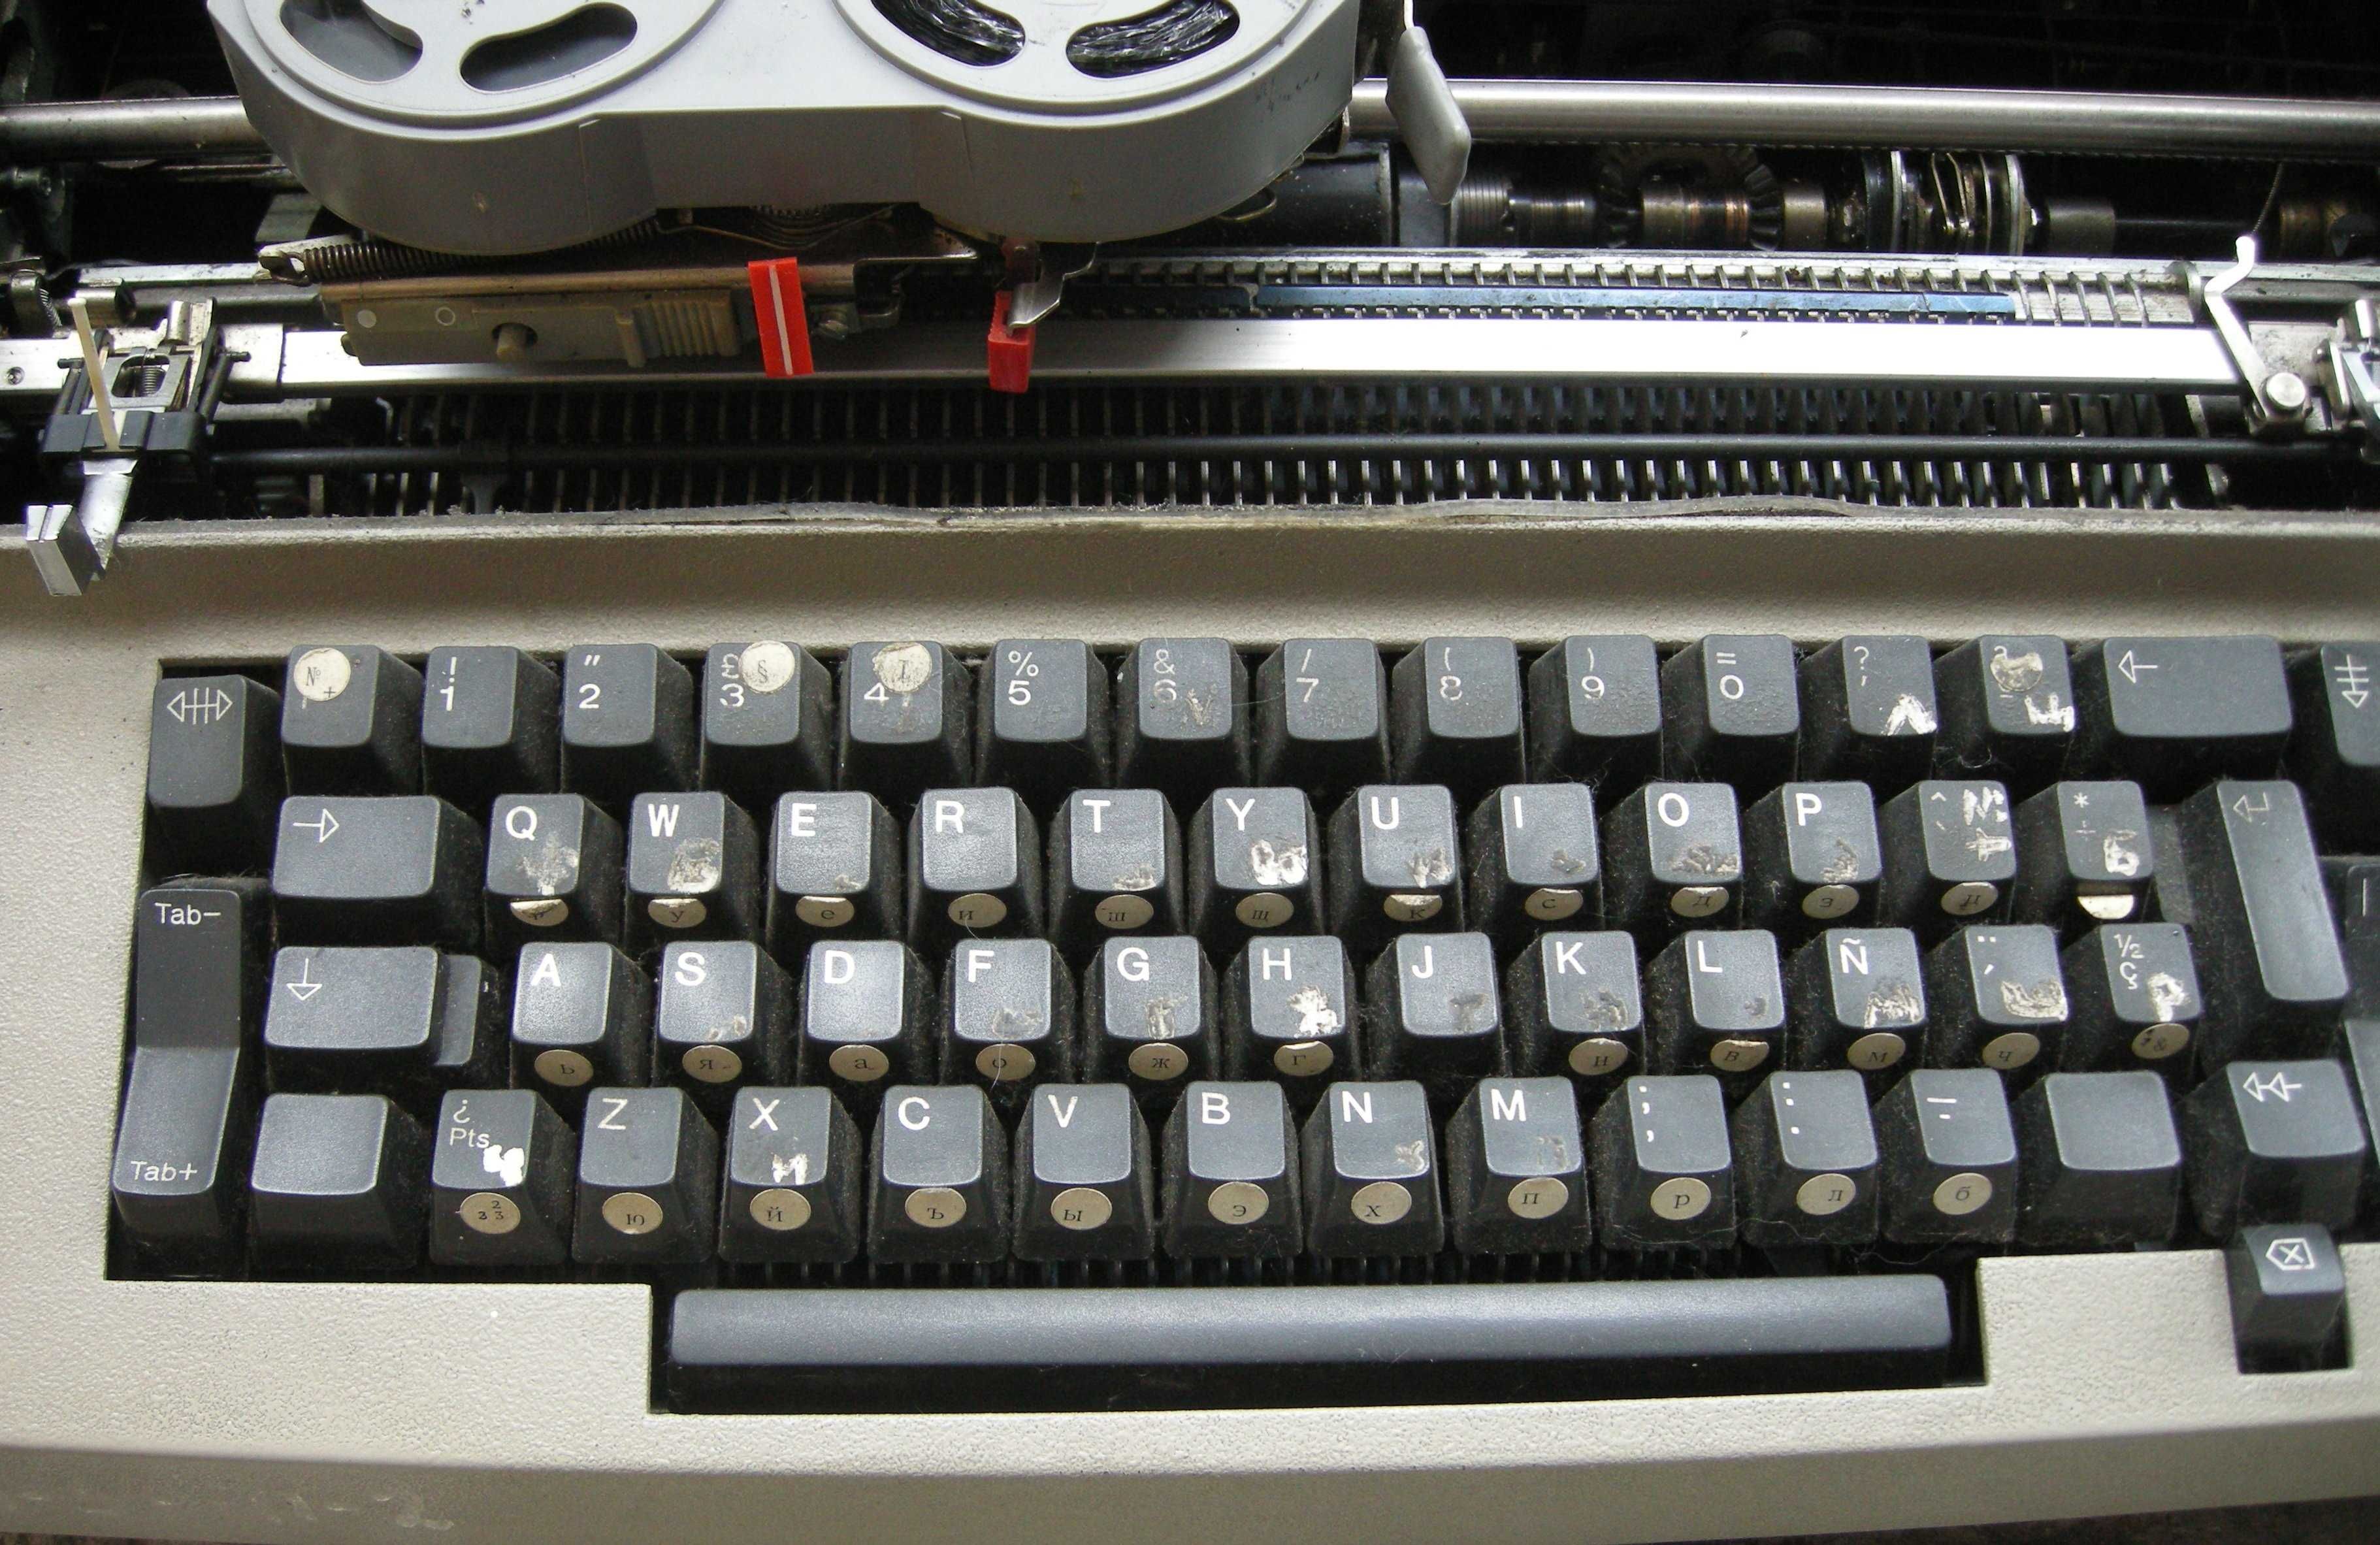 Пишеща машина IBM 196 C / 6705